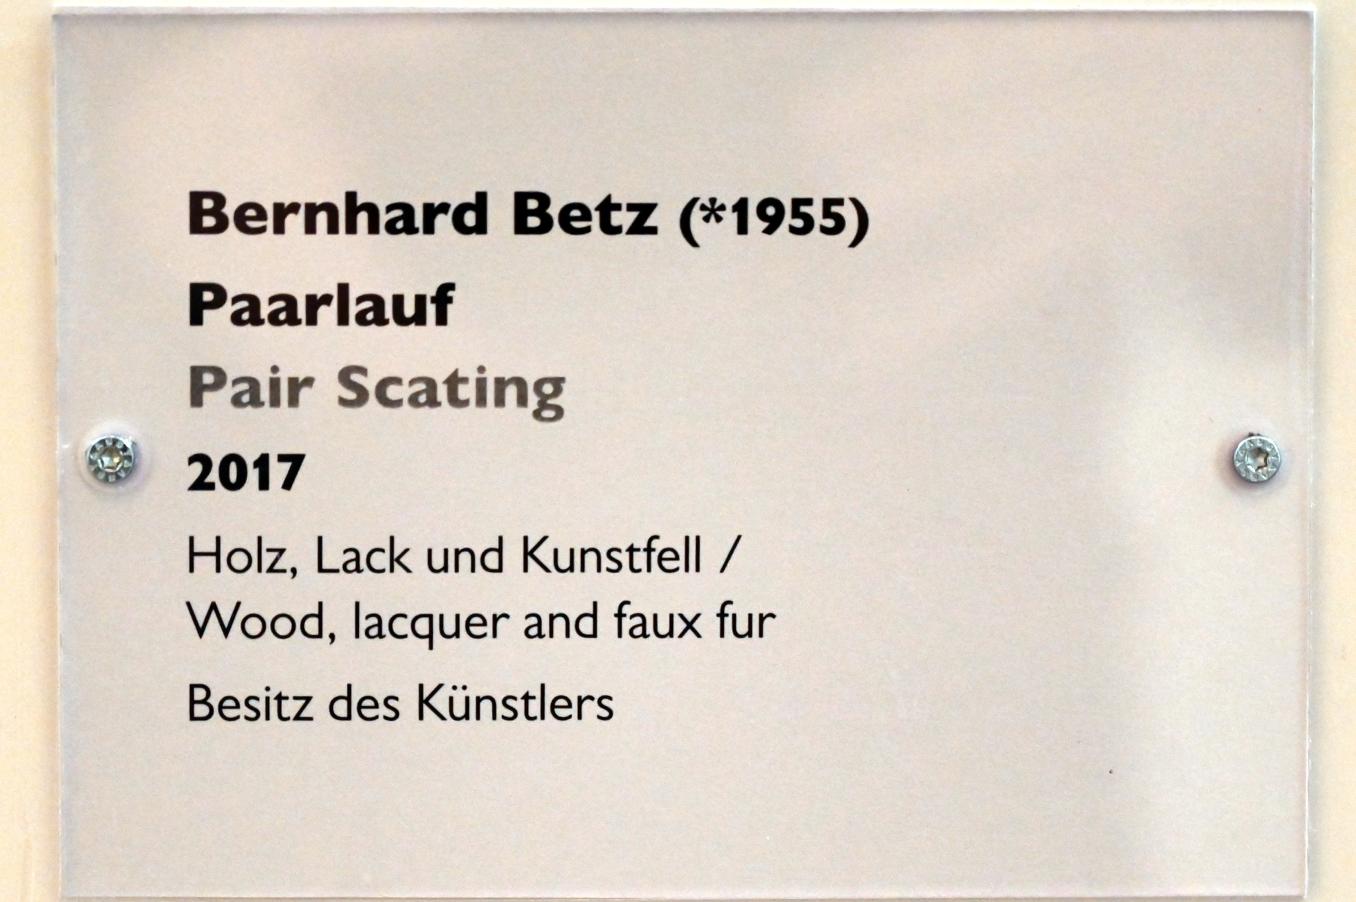 Bernhard Betz (2017), Paarlauf, Schwäbisch Hall, Kunsthalle Würth, Ausstellung "Sport, Spaß und Spiel" vom 13.12.2021 - 26.02.2023, Untergeschoß, 2017, Bild 4/4